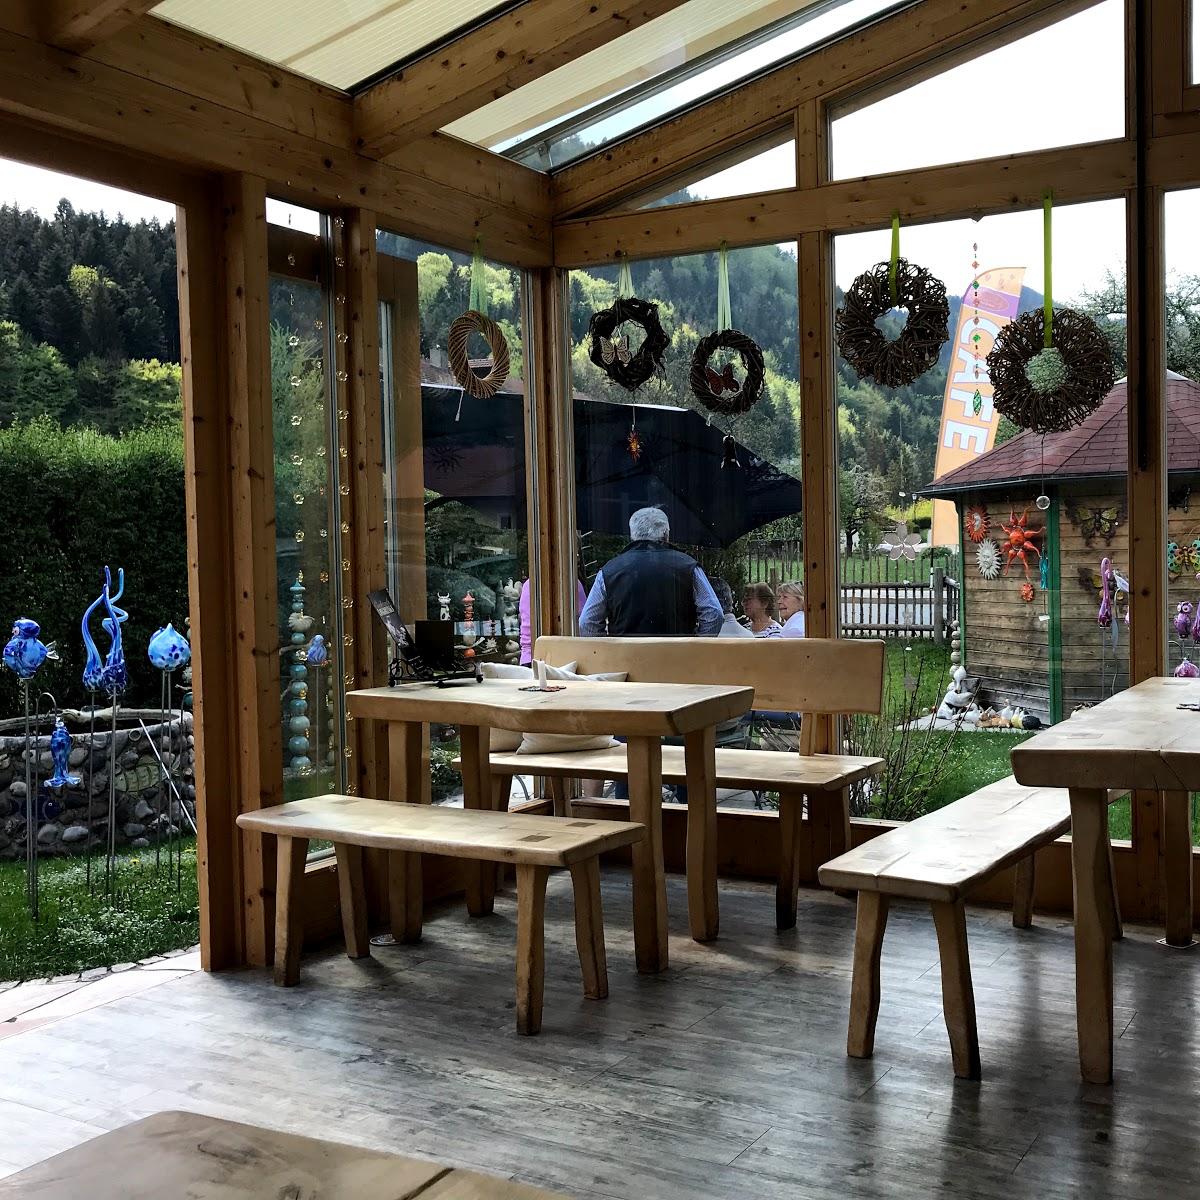 Restaurant "Erlebniscafé Ton und mehr" in Unterwössen